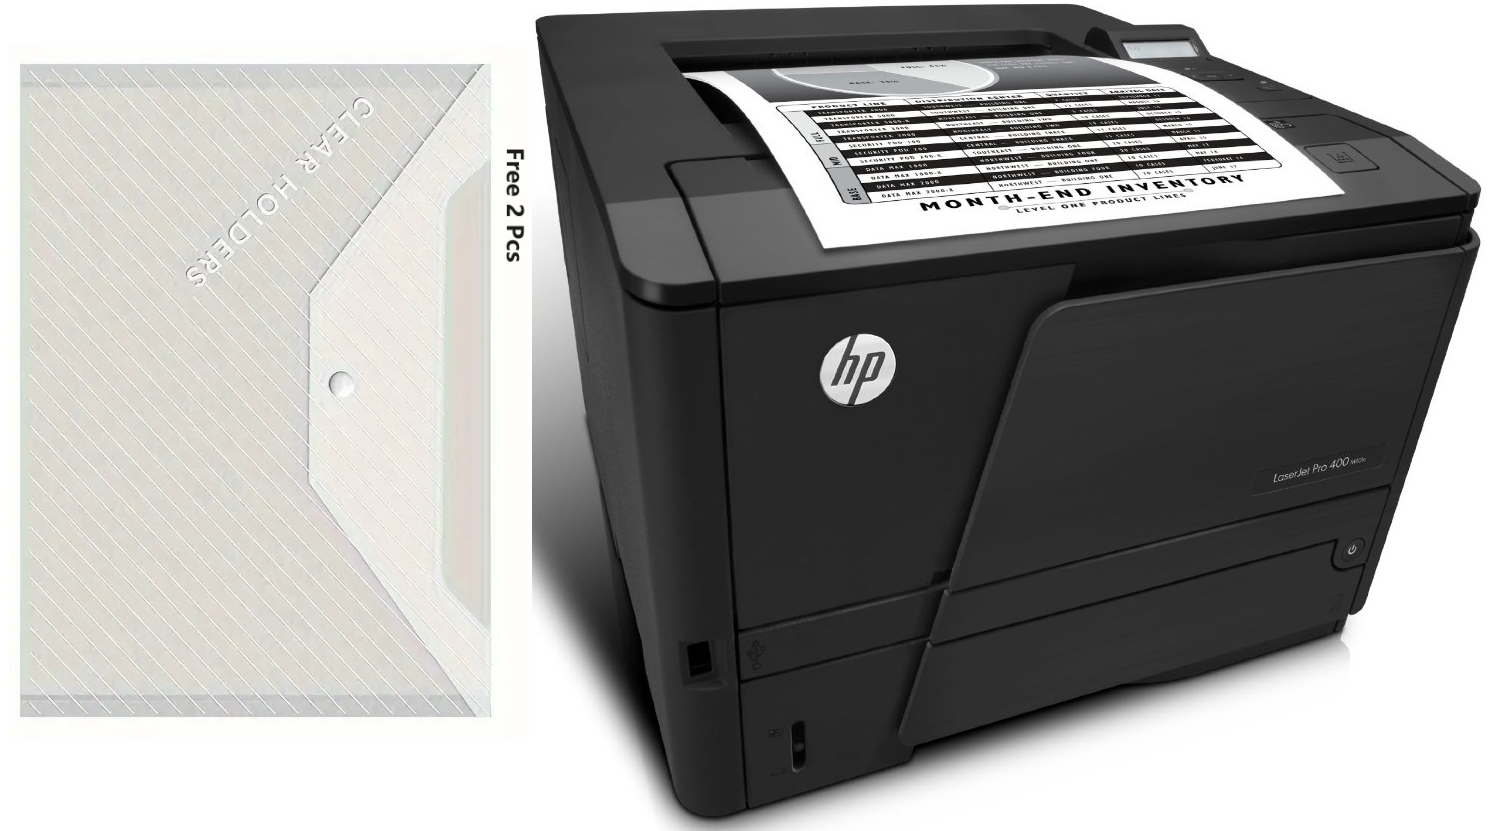 HP LaserJet Pro 400 M401N Monochrome Laser Printer (CZ195A) - image 1 of 4